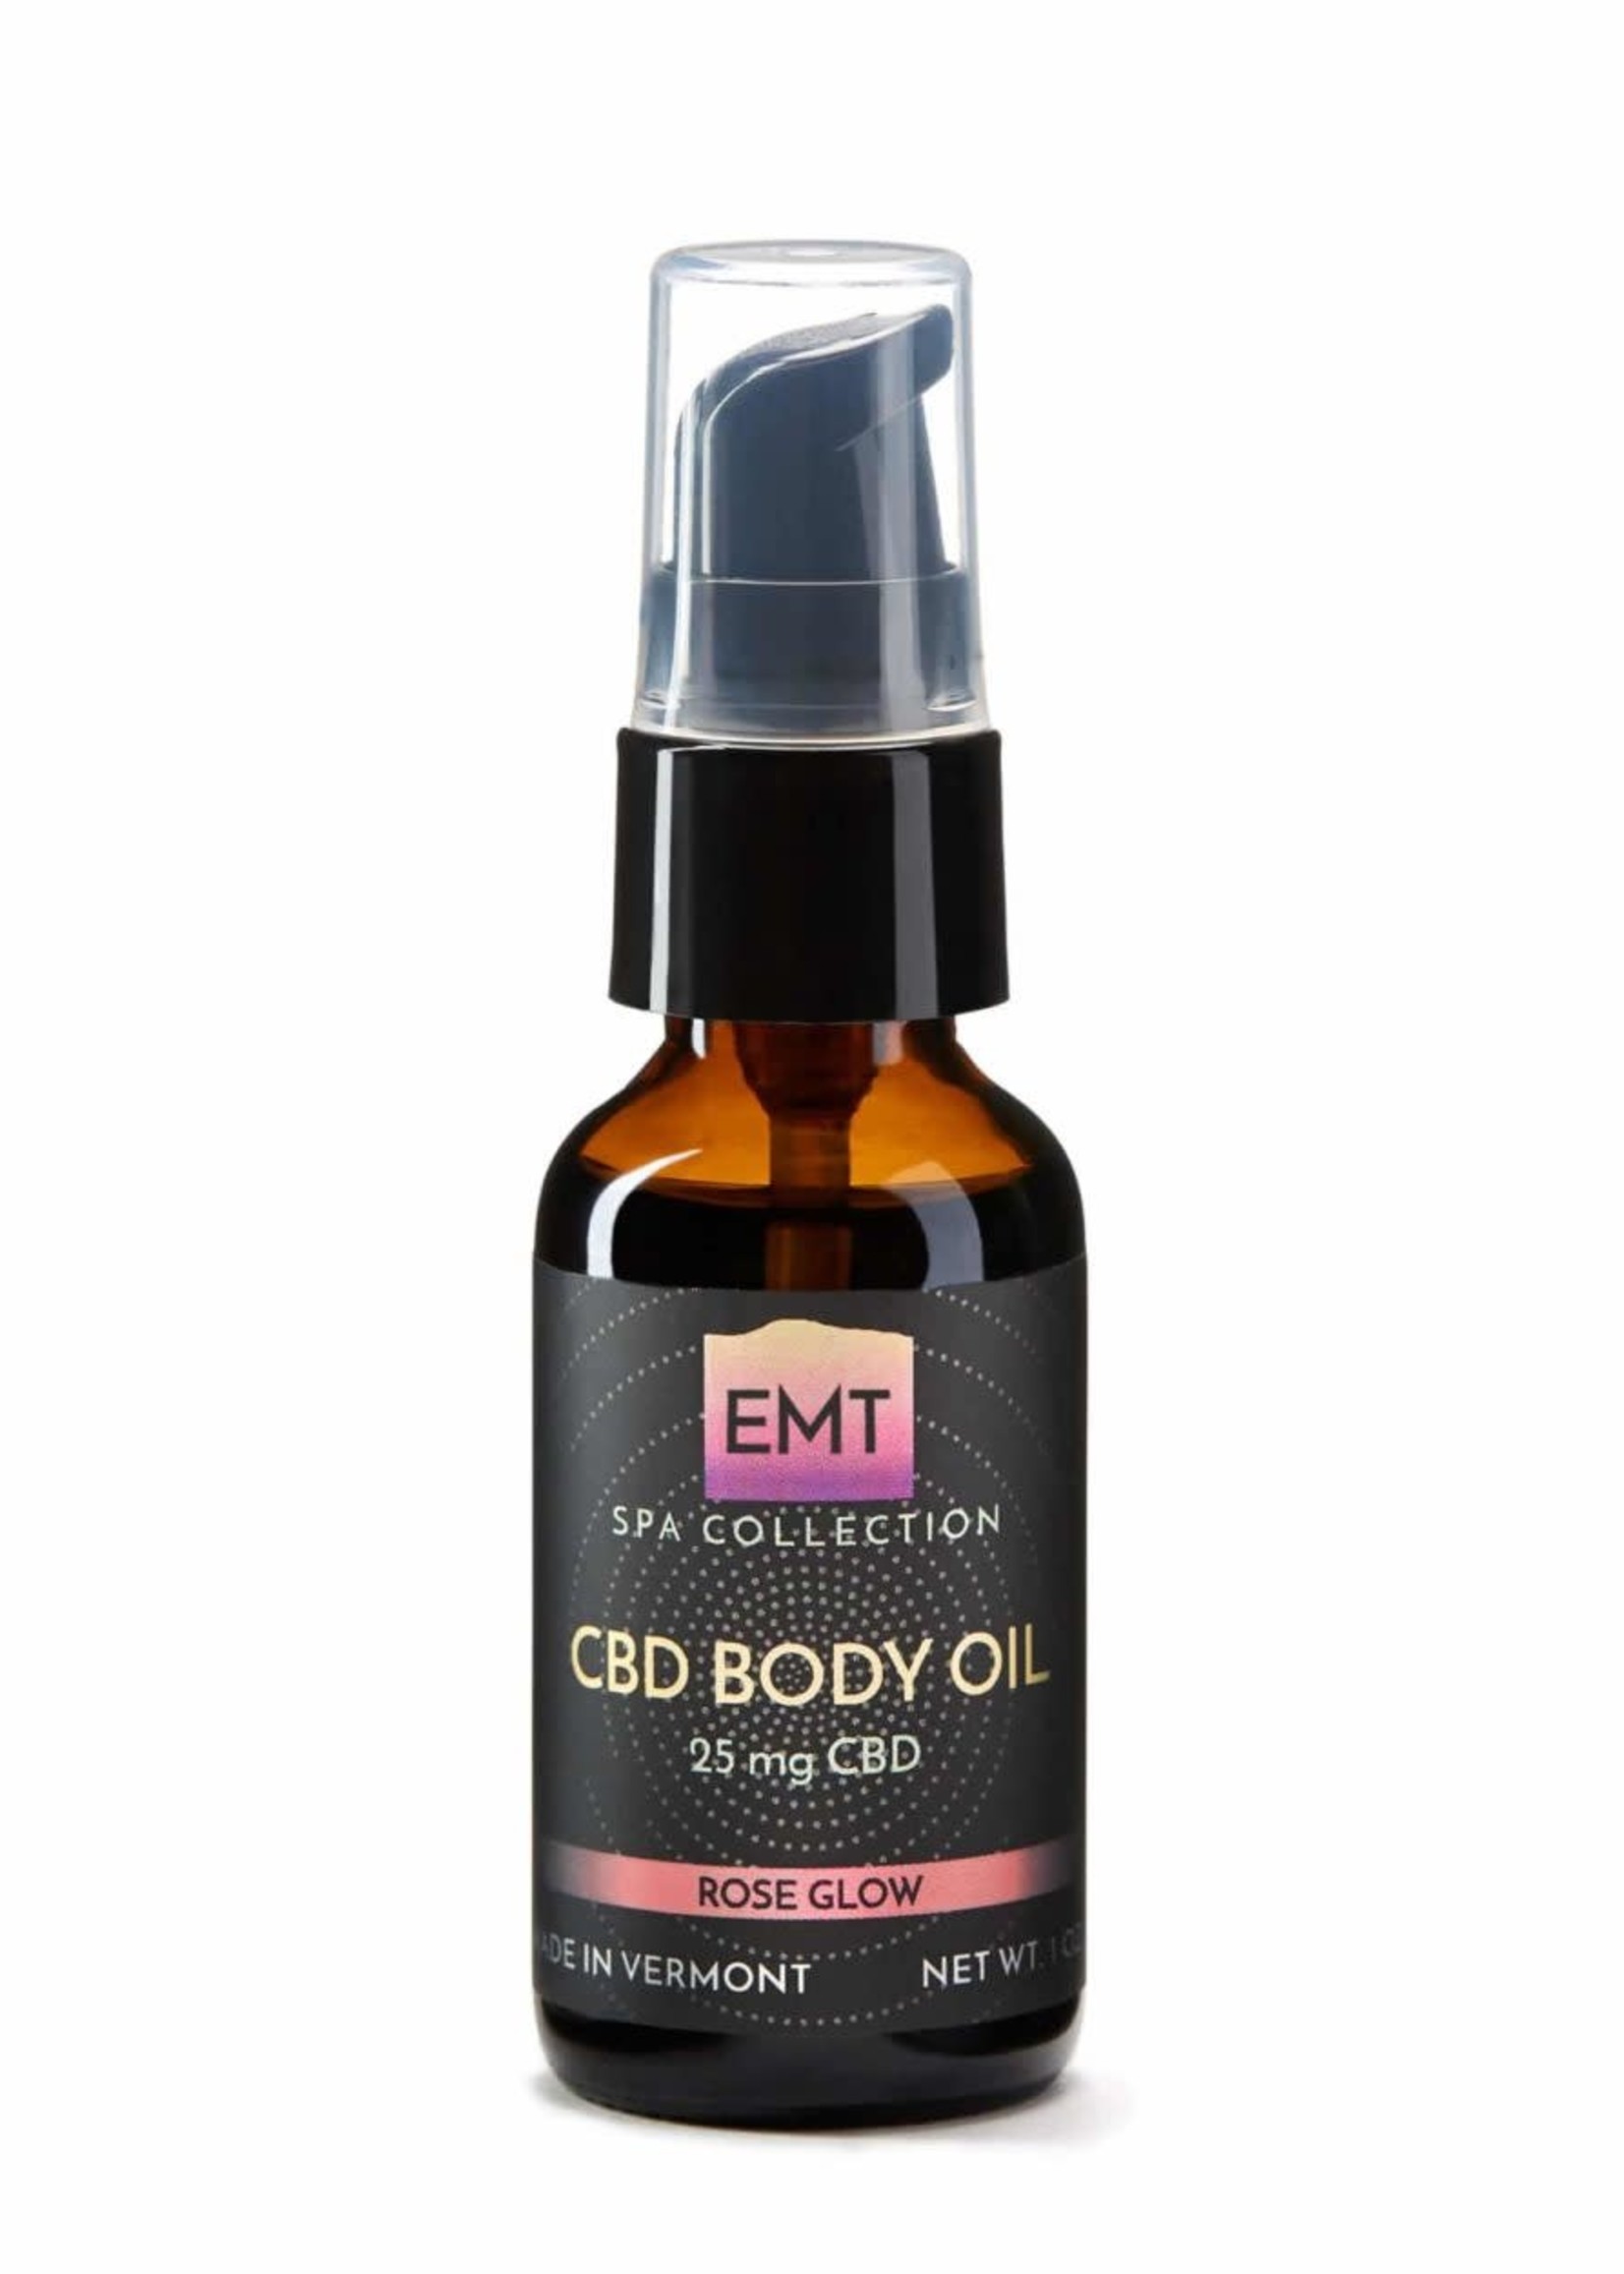 Elmore Mountain Therapeutics EMT, CBD Body Oil, 25mg, Rose Glow, 1oz